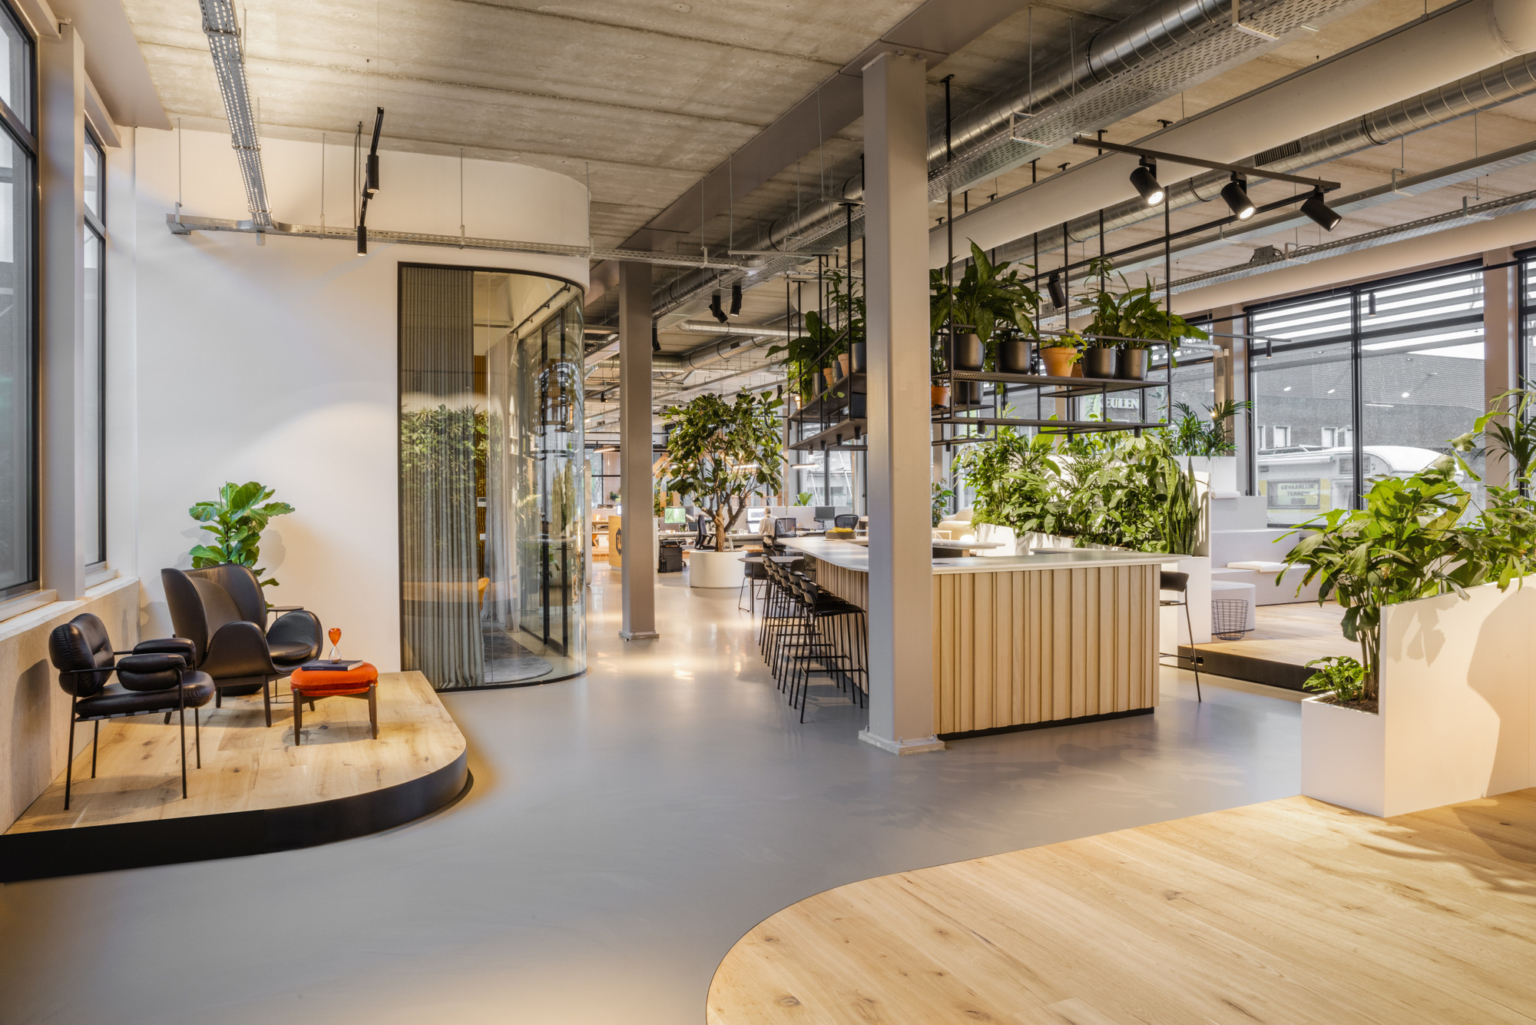 Ánh sáng tự nhiên tạo điều kiện cho cây xanh phát triển | Nguồn: Interior Works Offices – Amsterdam.